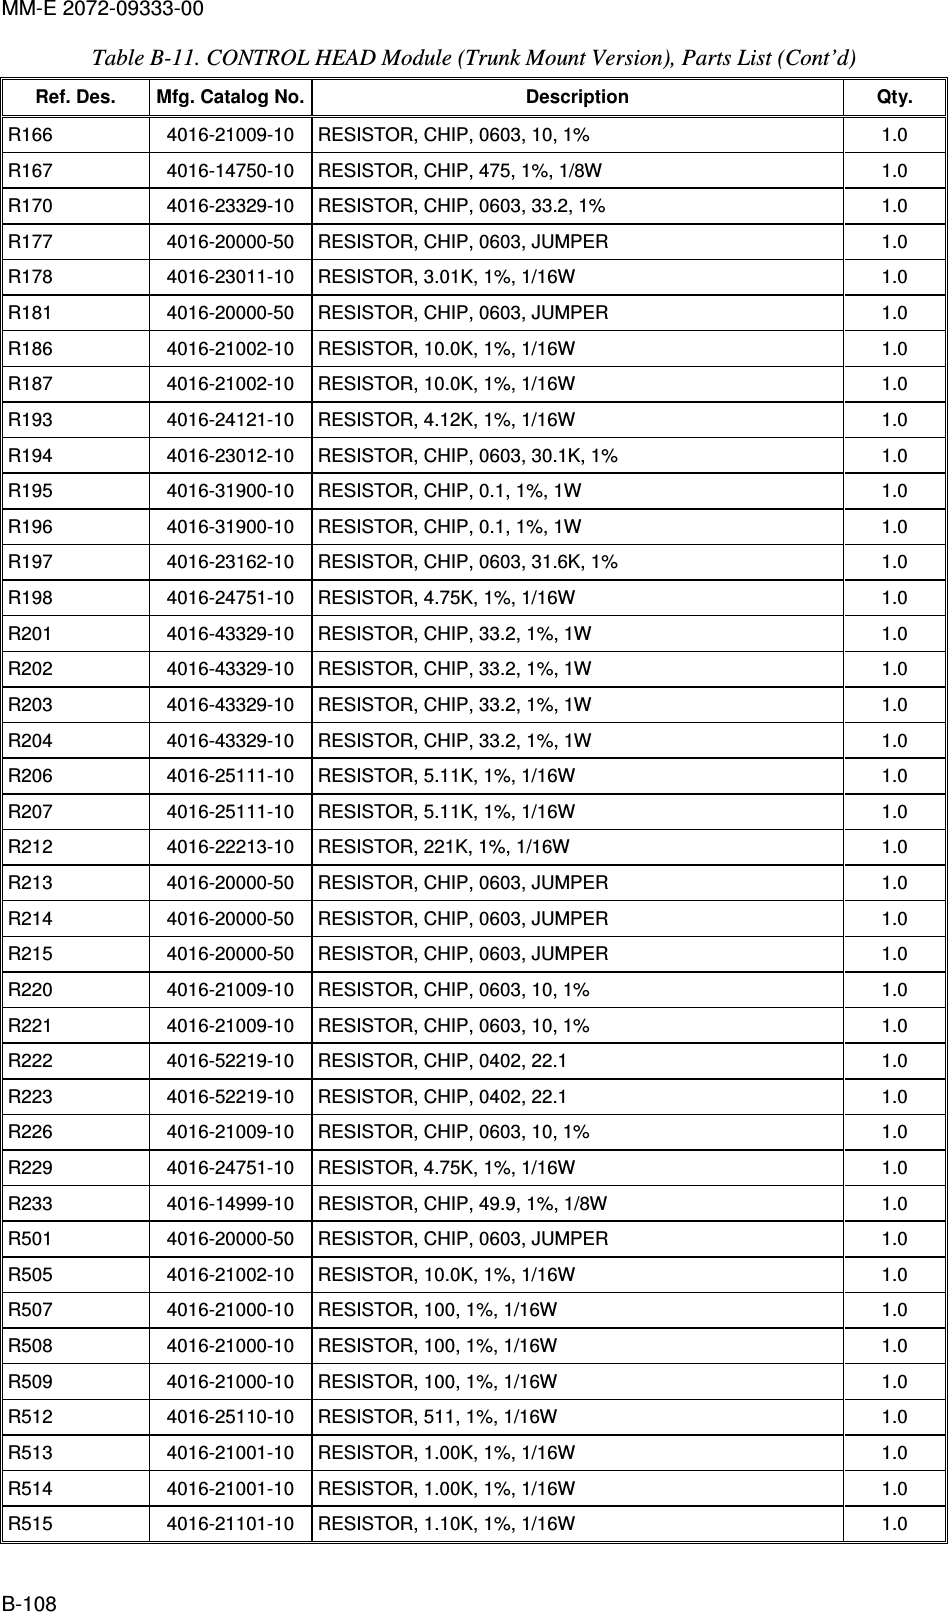 MM-E 2072-09333-00 B-108 Table  B-11. CONTROL HEAD Module (Trunk Mount Version), Parts List (Cont’d)  Ref. Des.  Mfg. Catalog No. Description  Qty. R166   4016-21009-10   RESISTOR, CHIP, 0603, 10, 1%  1.0  R167   4016-14750-10   RESISTOR, CHIP, 475, 1%, 1/8W  1.0  R170   4016-23329-10   RESISTOR, CHIP, 0603, 33.2, 1%  1.0  R177   4016-20000-50   RESISTOR, CHIP, 0603, JUMPER  1.0  R178   4016-23011-10   RESISTOR, 3.01K, 1%, 1/16W  1.0  R181   4016-20000-50   RESISTOR, CHIP, 0603, JUMPER  1.0  R186   4016-21002-10   RESISTOR, 10.0K, 1%, 1/16W  1.0  R187   4016-21002-10   RESISTOR, 10.0K, 1%, 1/16W  1.0  R193   4016-24121-10   RESISTOR, 4.12K, 1%, 1/16W  1.0  R194   4016-23012-10   RESISTOR, CHIP, 0603, 30.1K, 1%  1.0  R195   4016-31900-10   RESISTOR, CHIP, 0.1, 1%, 1W  1.0  R196   4016-31900-10   RESISTOR, CHIP, 0.1, 1%, 1W  1.0  R197   4016-23162-10   RESISTOR, CHIP, 0603, 31.6K, 1%  1.0  R198   4016-24751-10   RESISTOR, 4.75K, 1%, 1/16W  1.0  R201   4016-43329-10   RESISTOR, CHIP, 33.2, 1%, 1W  1.0  R202   4016-43329-10   RESISTOR, CHIP, 33.2, 1%, 1W  1.0  R203   4016-43329-10   RESISTOR, CHIP, 33.2, 1%, 1W  1.0  R204   4016-43329-10   RESISTOR, CHIP, 33.2, 1%, 1W  1.0  R206   4016-25111-10   RESISTOR, 5.11K, 1%, 1/16W  1.0  R207   4016-25111-10   RESISTOR, 5.11K, 1%, 1/16W  1.0  R212   4016-22213-10   RESISTOR, 221K, 1%, 1/16W  1.0  R213   4016-20000-50   RESISTOR, CHIP, 0603, JUMPER  1.0  R214   4016-20000-50   RESISTOR, CHIP, 0603, JUMPER  1.0  R215   4016-20000-50   RESISTOR, CHIP, 0603, JUMPER  1.0  R220   4016-21009-10   RESISTOR, CHIP, 0603, 10, 1%  1.0  R221  4016-21009-10   RESISTOR, CHIP, 0603, 10, 1%  1.0  R222   4016-52219-10   RESISTOR, CHIP, 0402, 22.1  1.0  R223   4016-52219-10   RESISTOR, CHIP, 0402, 22.1  1.0  R226   4016-21009-10   RESISTOR, CHIP, 0603, 10, 1%  1.0  R229   4016-24751-10   RESISTOR, 4.75K, 1%, 1/16W  1.0  R233   4016-14999-10   RESISTOR, CHIP, 49.9, 1%, 1/8W  1.0  R501   4016-20000-50   RESISTOR, CHIP, 0603, JUMPER  1.0  R505   4016-21002-10   RESISTOR, 10.0K, 1%, 1/16W  1.0  R507   4016-21000-10   RESISTOR, 100, 1%, 1/16W  1.0  R508   4016-21000-10   RESISTOR, 100, 1%, 1/16W  1.0  R509   4016-21000-10   RESISTOR, 100, 1%, 1/16W  1.0  R512   4016-25110-10   RESISTOR, 511, 1%, 1/16W  1.0  R513   4016-21001-10   RESISTOR, 1.00K, 1%, 1/16W  1.0  R514   4016-21001-10   RESISTOR, 1.00K, 1%, 1/16W  1.0  R515   4016-21101-10   RESISTOR, 1.10K, 1%, 1/16W  1.0  